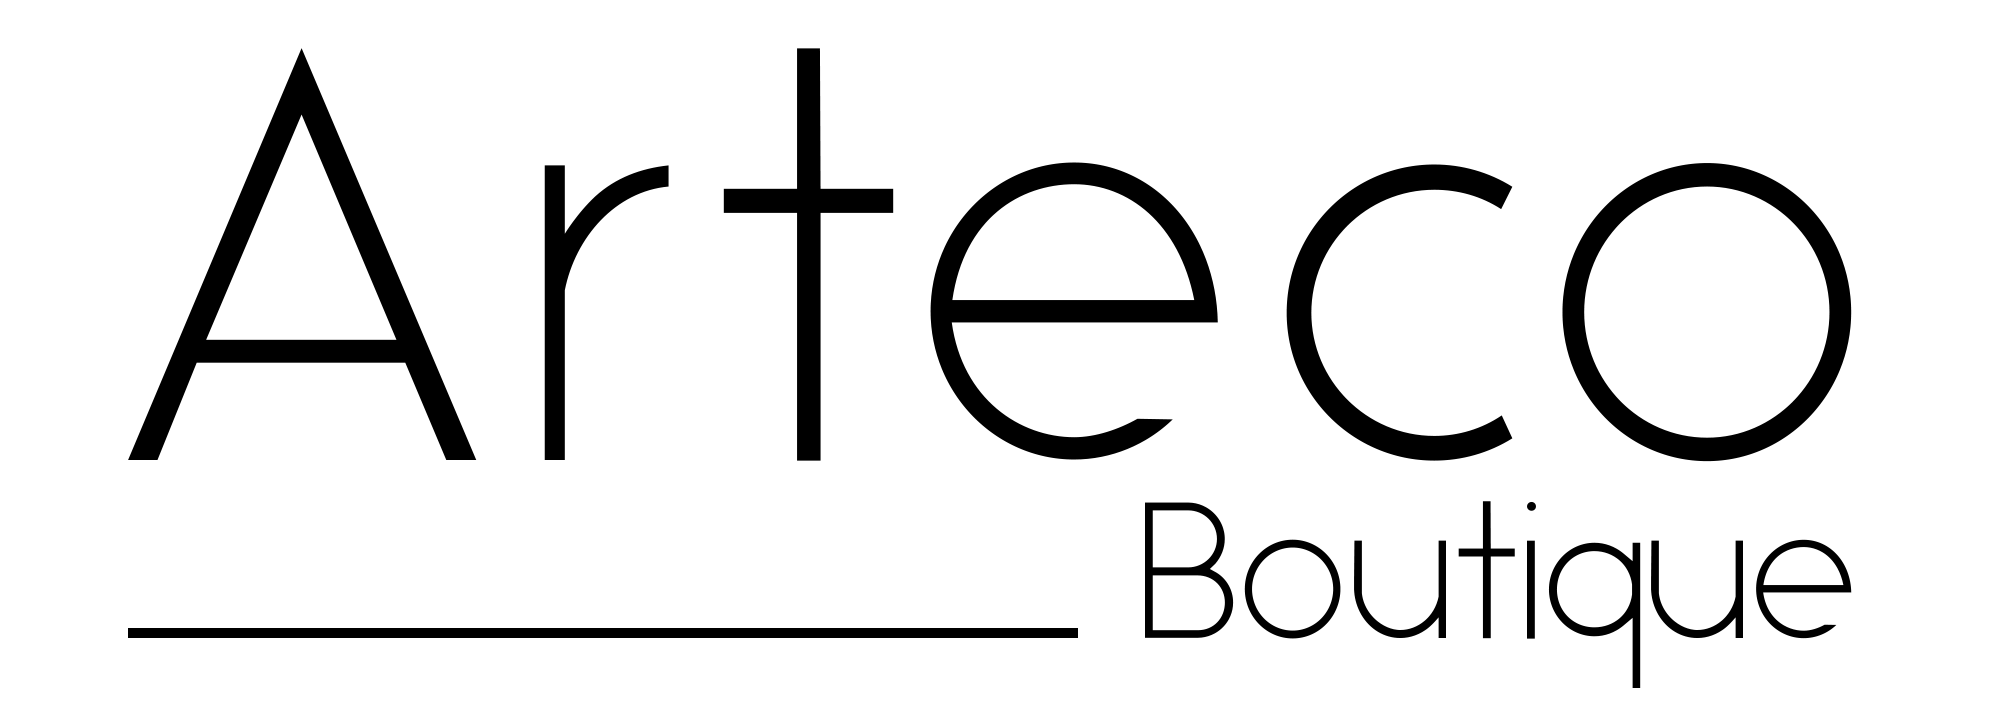 Logo Artecobutique_test2